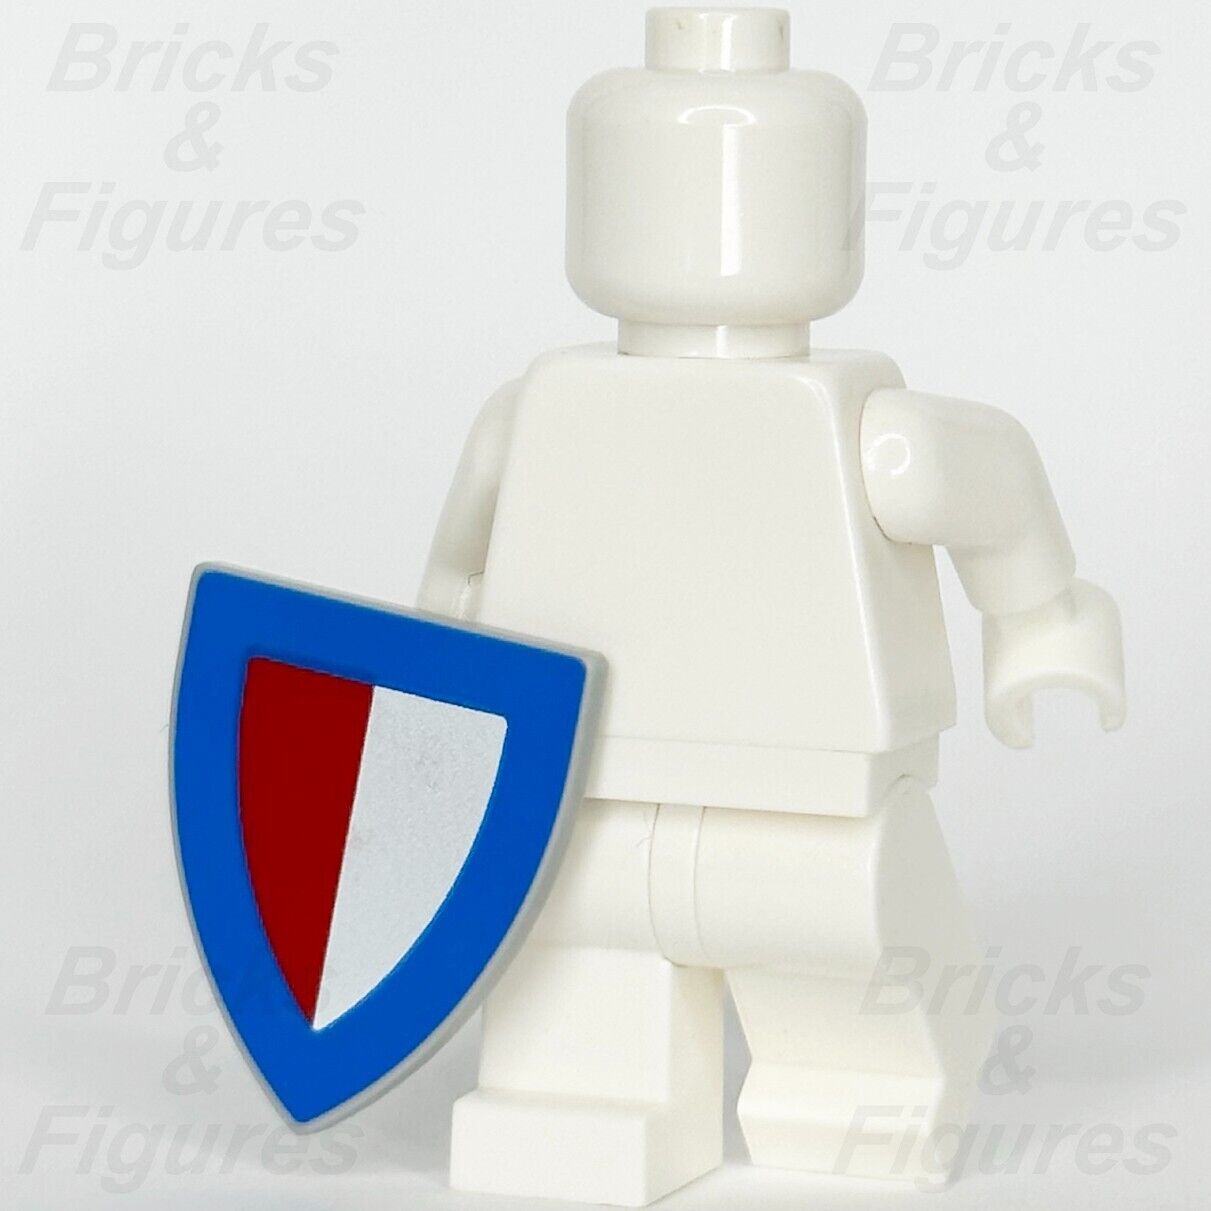 LEGO Castle 1 x Shield Blue w/ Red & White Halves Minifigure Weapon Part 10305 - Bricks & Figures